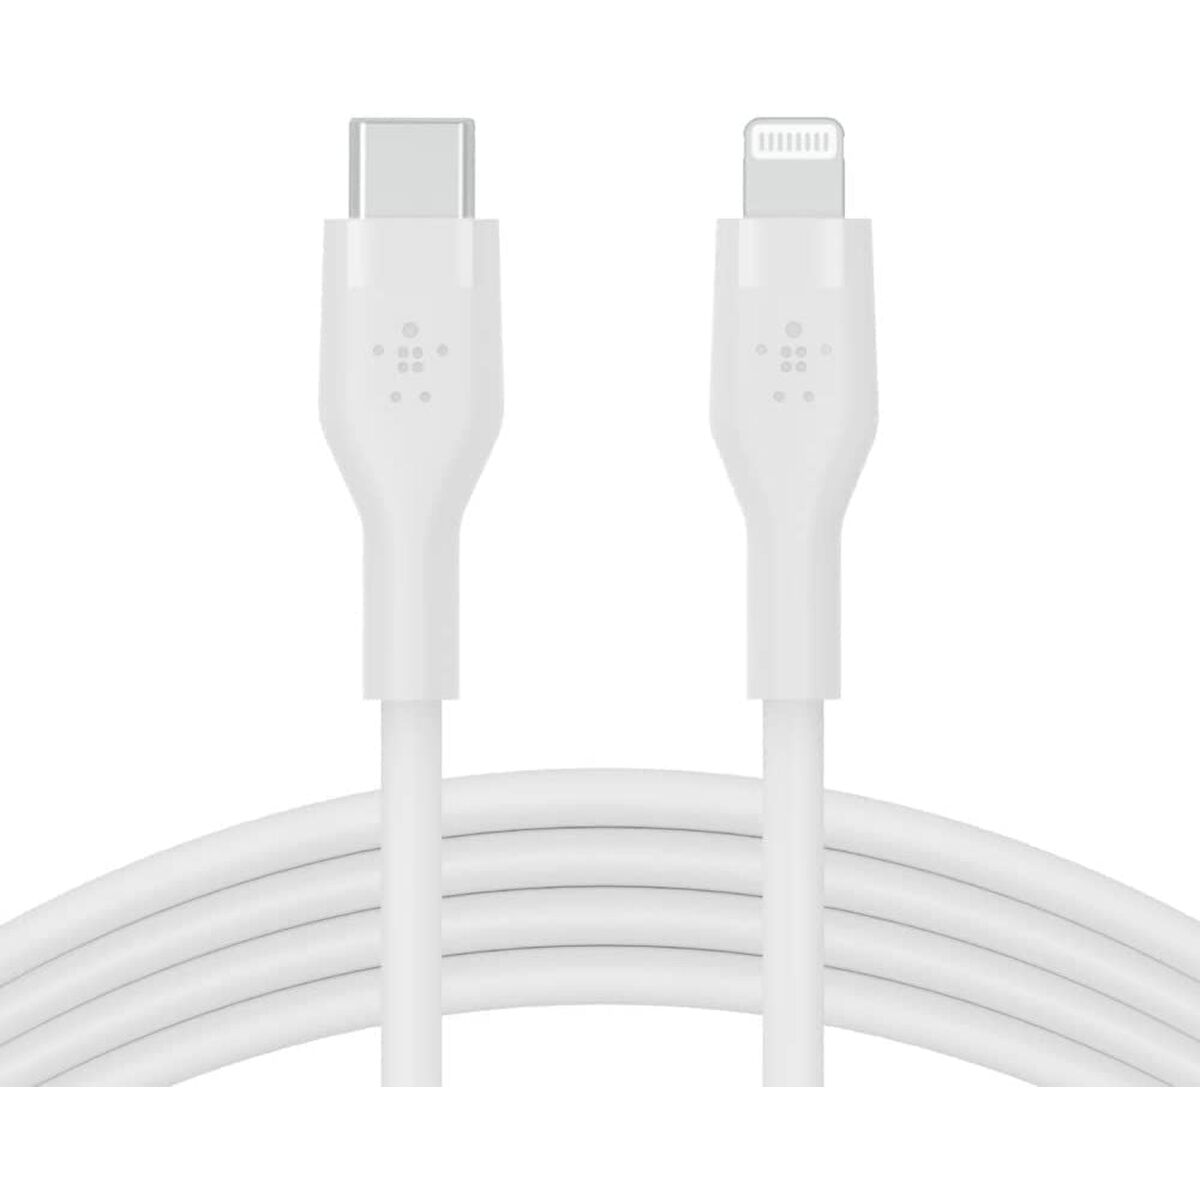 Osta tuote USB-C – Lightning kaapeli Belkin CAA009BT1MWH 1 m Valkoinen (1 osaa) verkkokaupastamme Korhone: Urheilu & Vapaa-aika 20% alennuksella koodilla VIIKONLOPPU